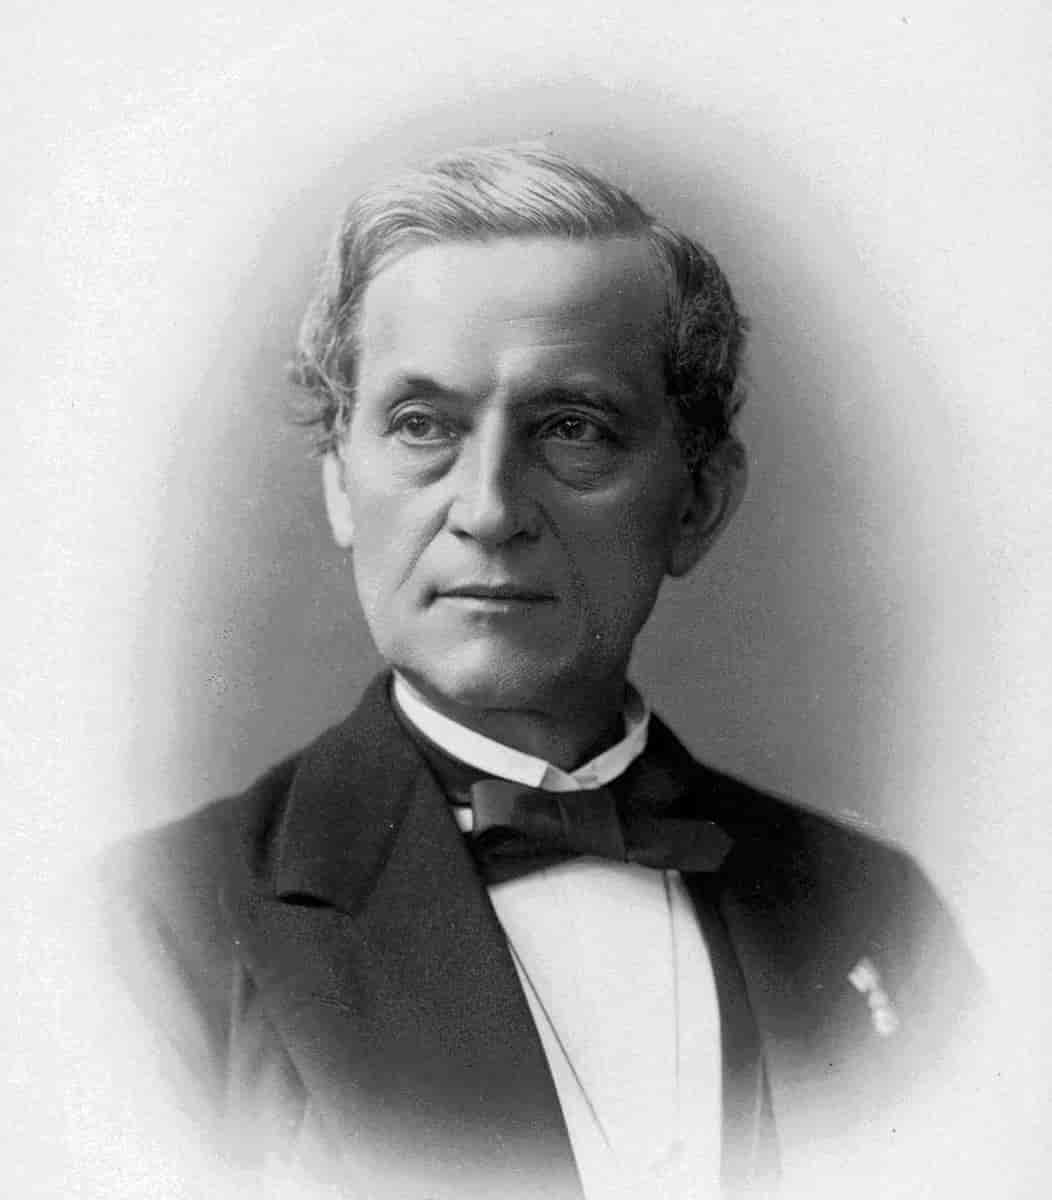 Johan Diederich Behrens